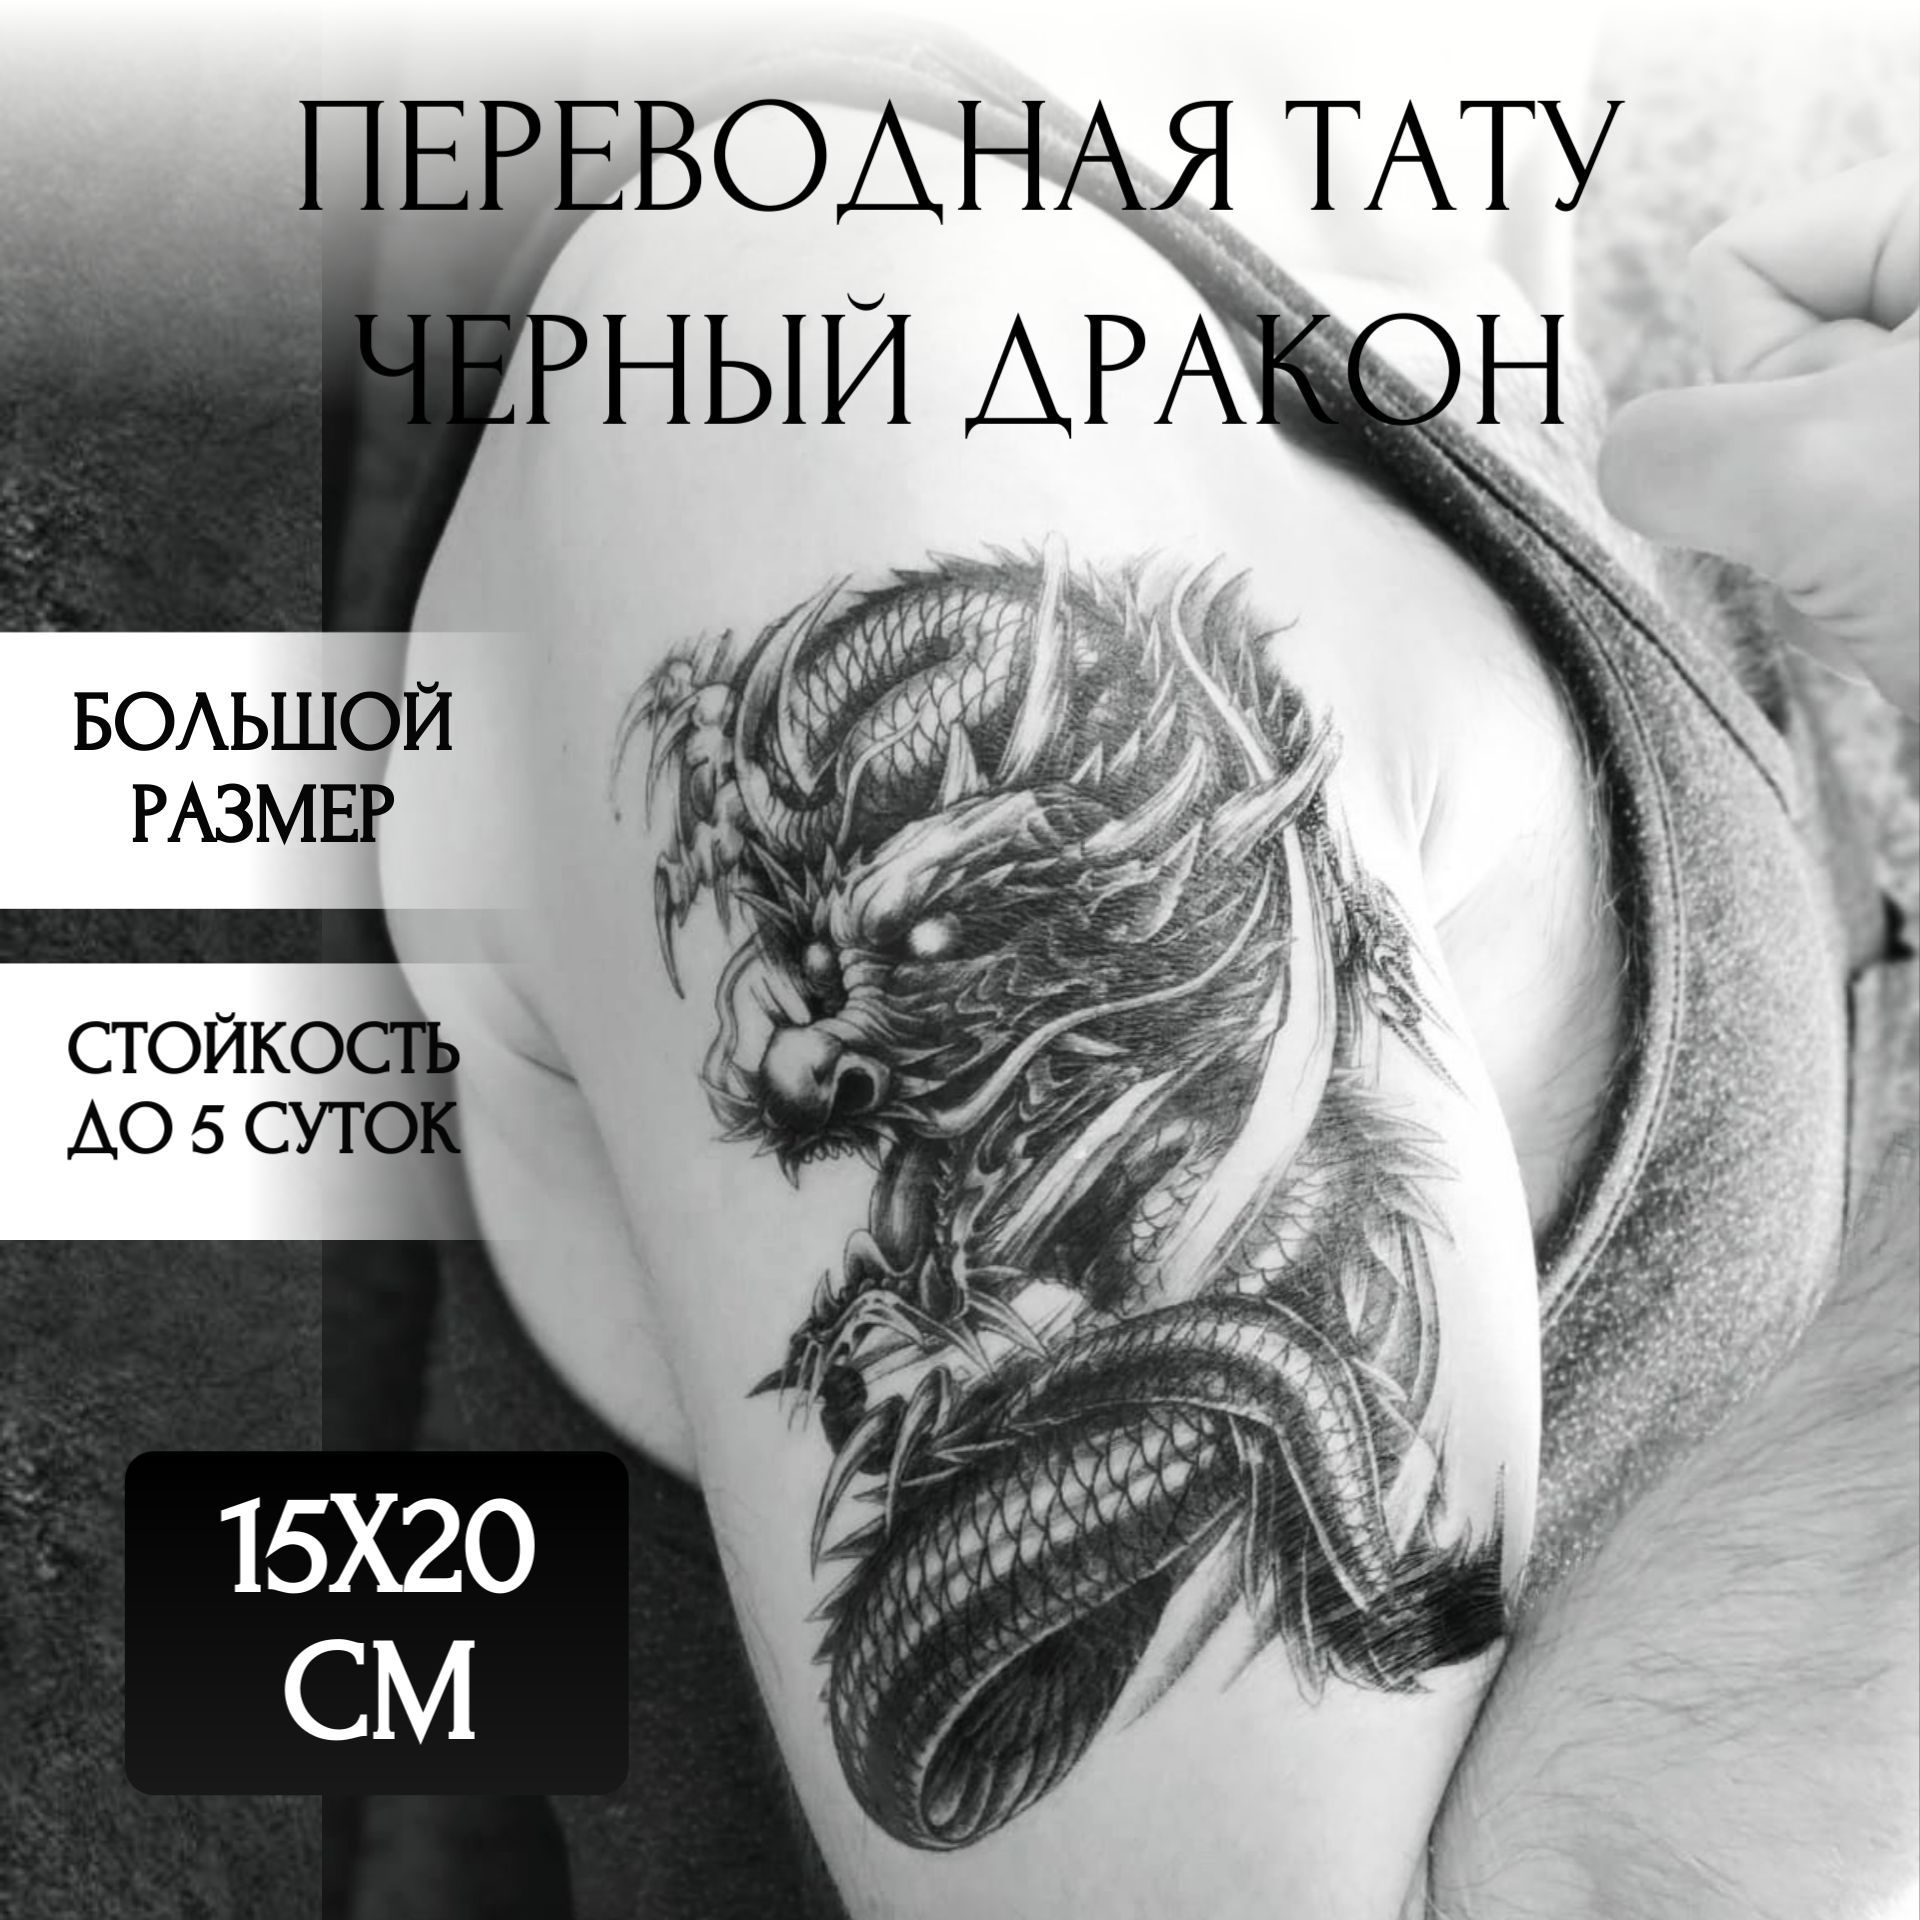 Значение татуировки дракона и фото